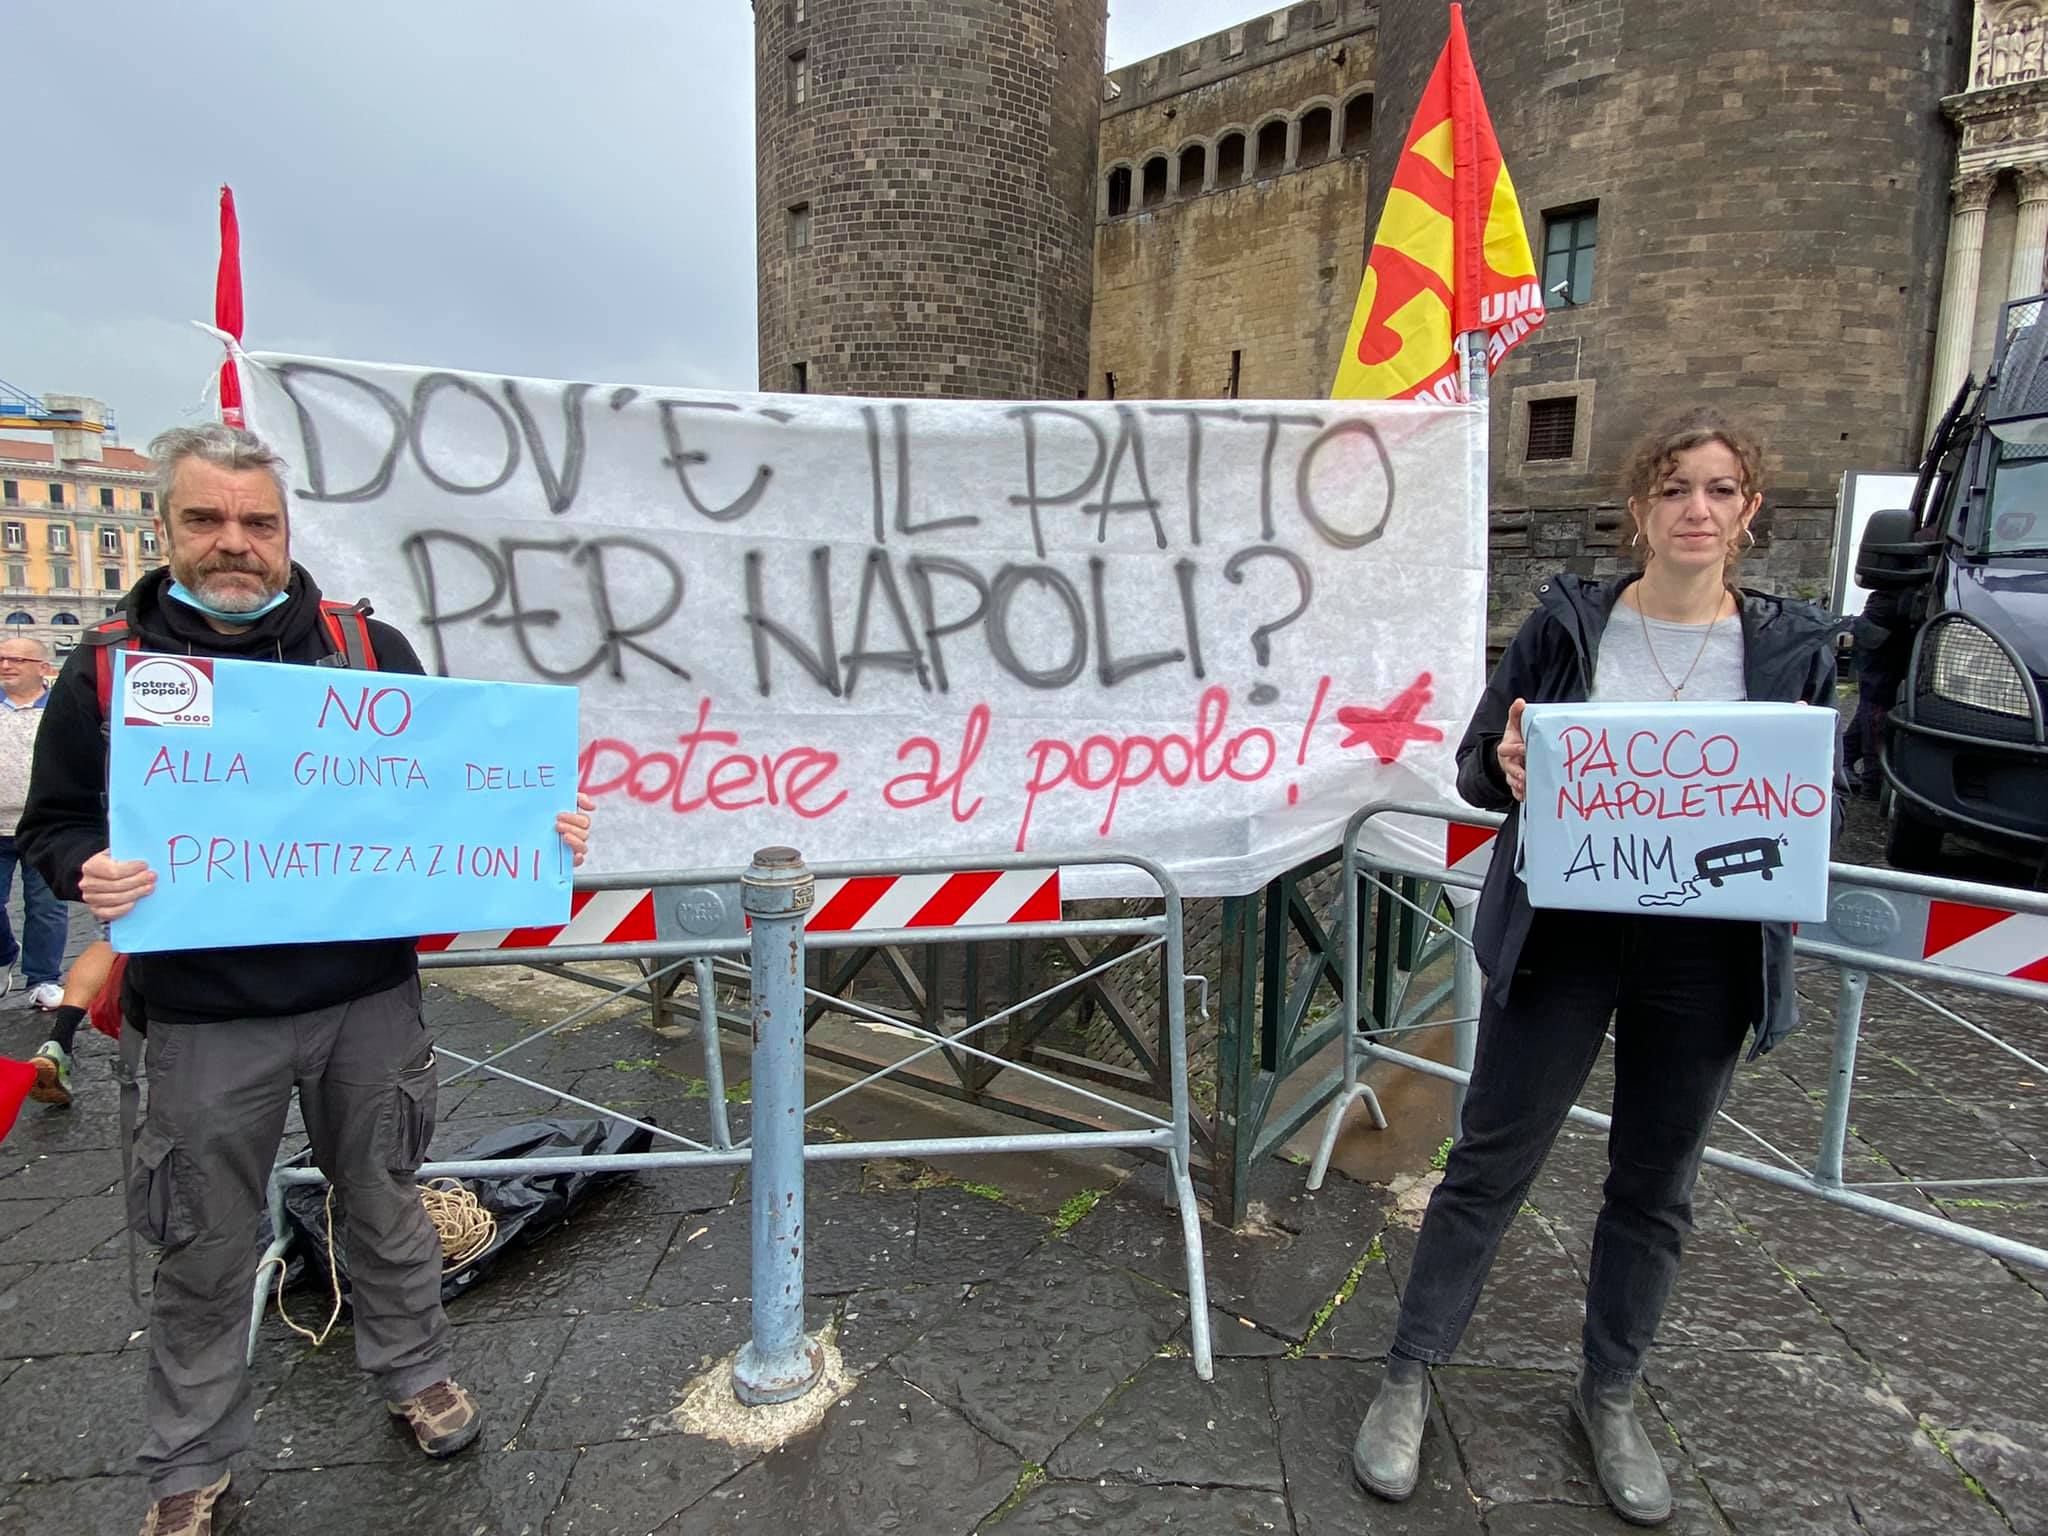 A Napoli solo 85 milioni  dal governo in cambio di privatizzazioni, aumenti delle tasse, svendita del patrimonio